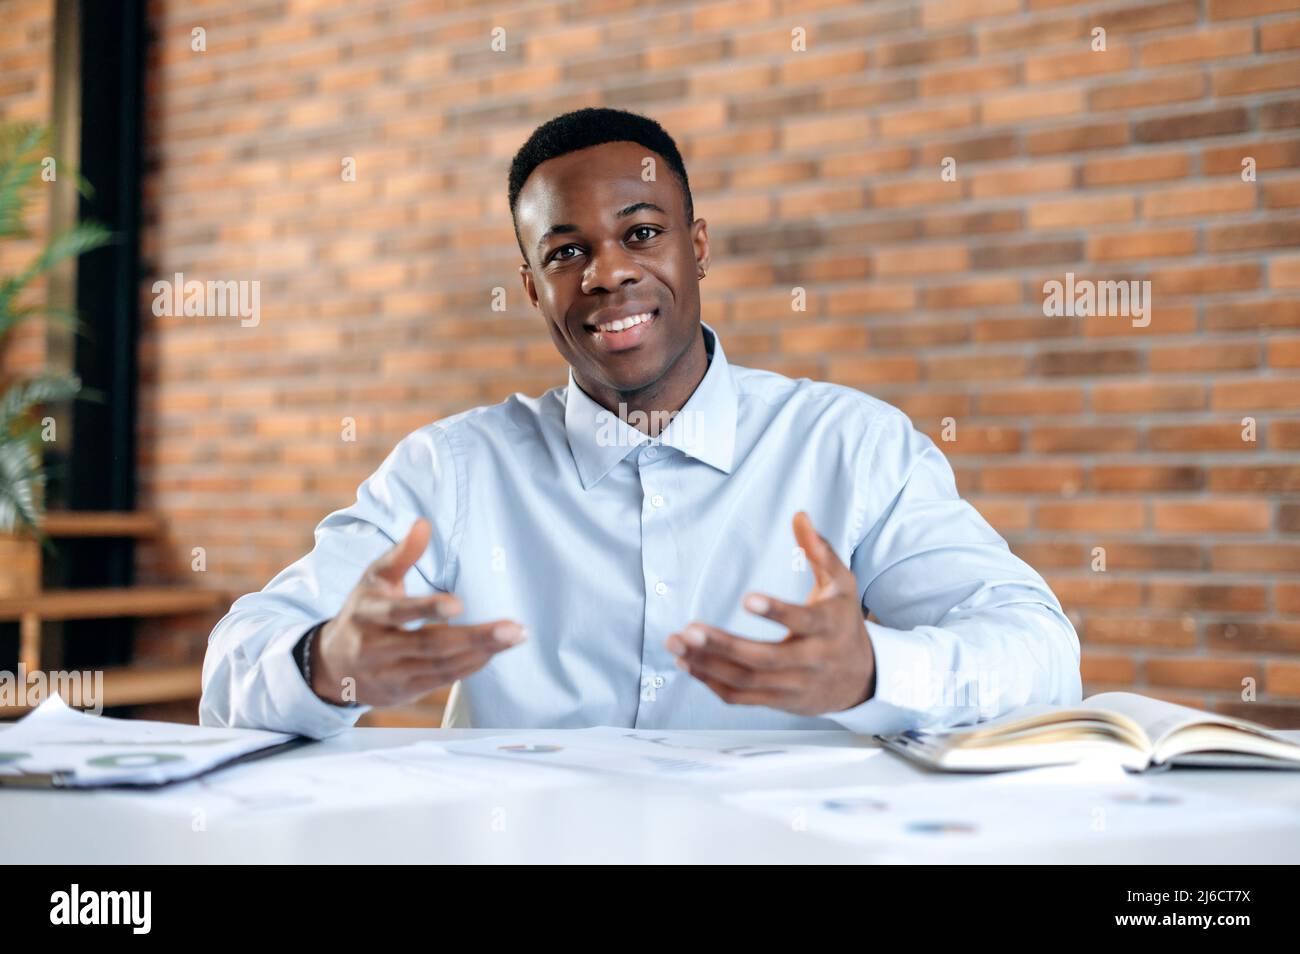 Un dirigeant d'entreprise afro-américain, un mentor ou un responsable d'entreprise séduisant et réussi s'entretient avec un employé ou un client lors d'une communication vidéo, d'un brainstorming, d'un gestuelle avec les mains, d'un coup d'œil à la caméra, d'un sourire Banque D'Images